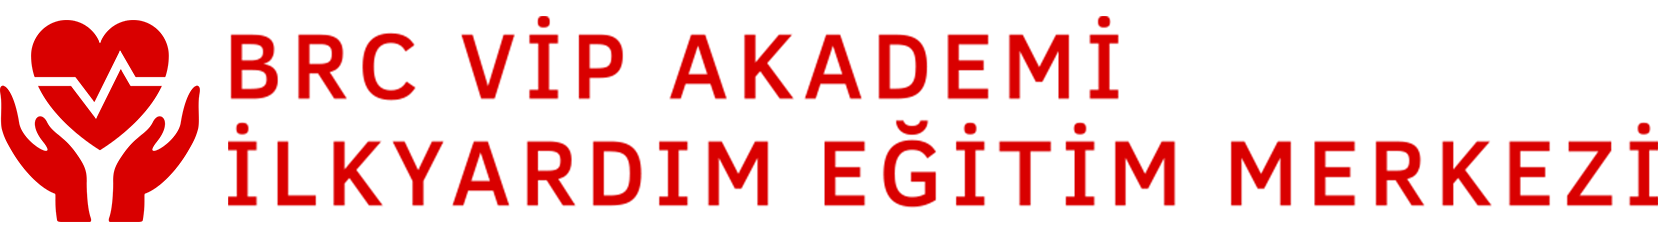 logo_red2